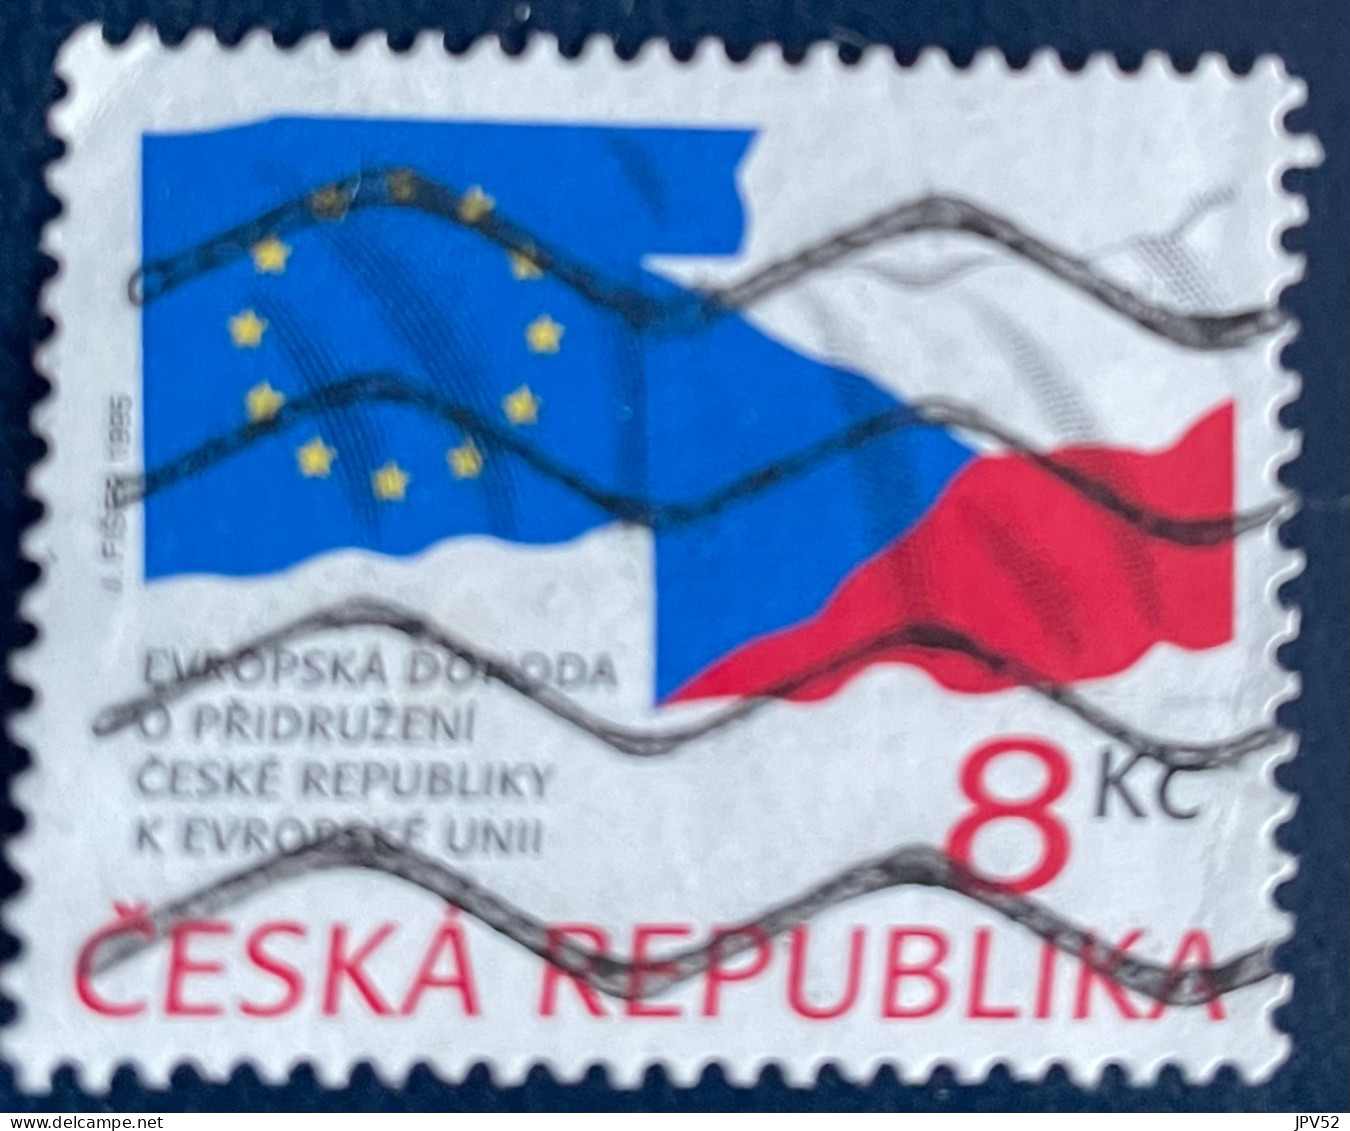 Ceska Republika - Tsjechië - C4/4 - 1995 - (°)used - Michel 62 - Tsjechië Lid Va EU - Gebraucht